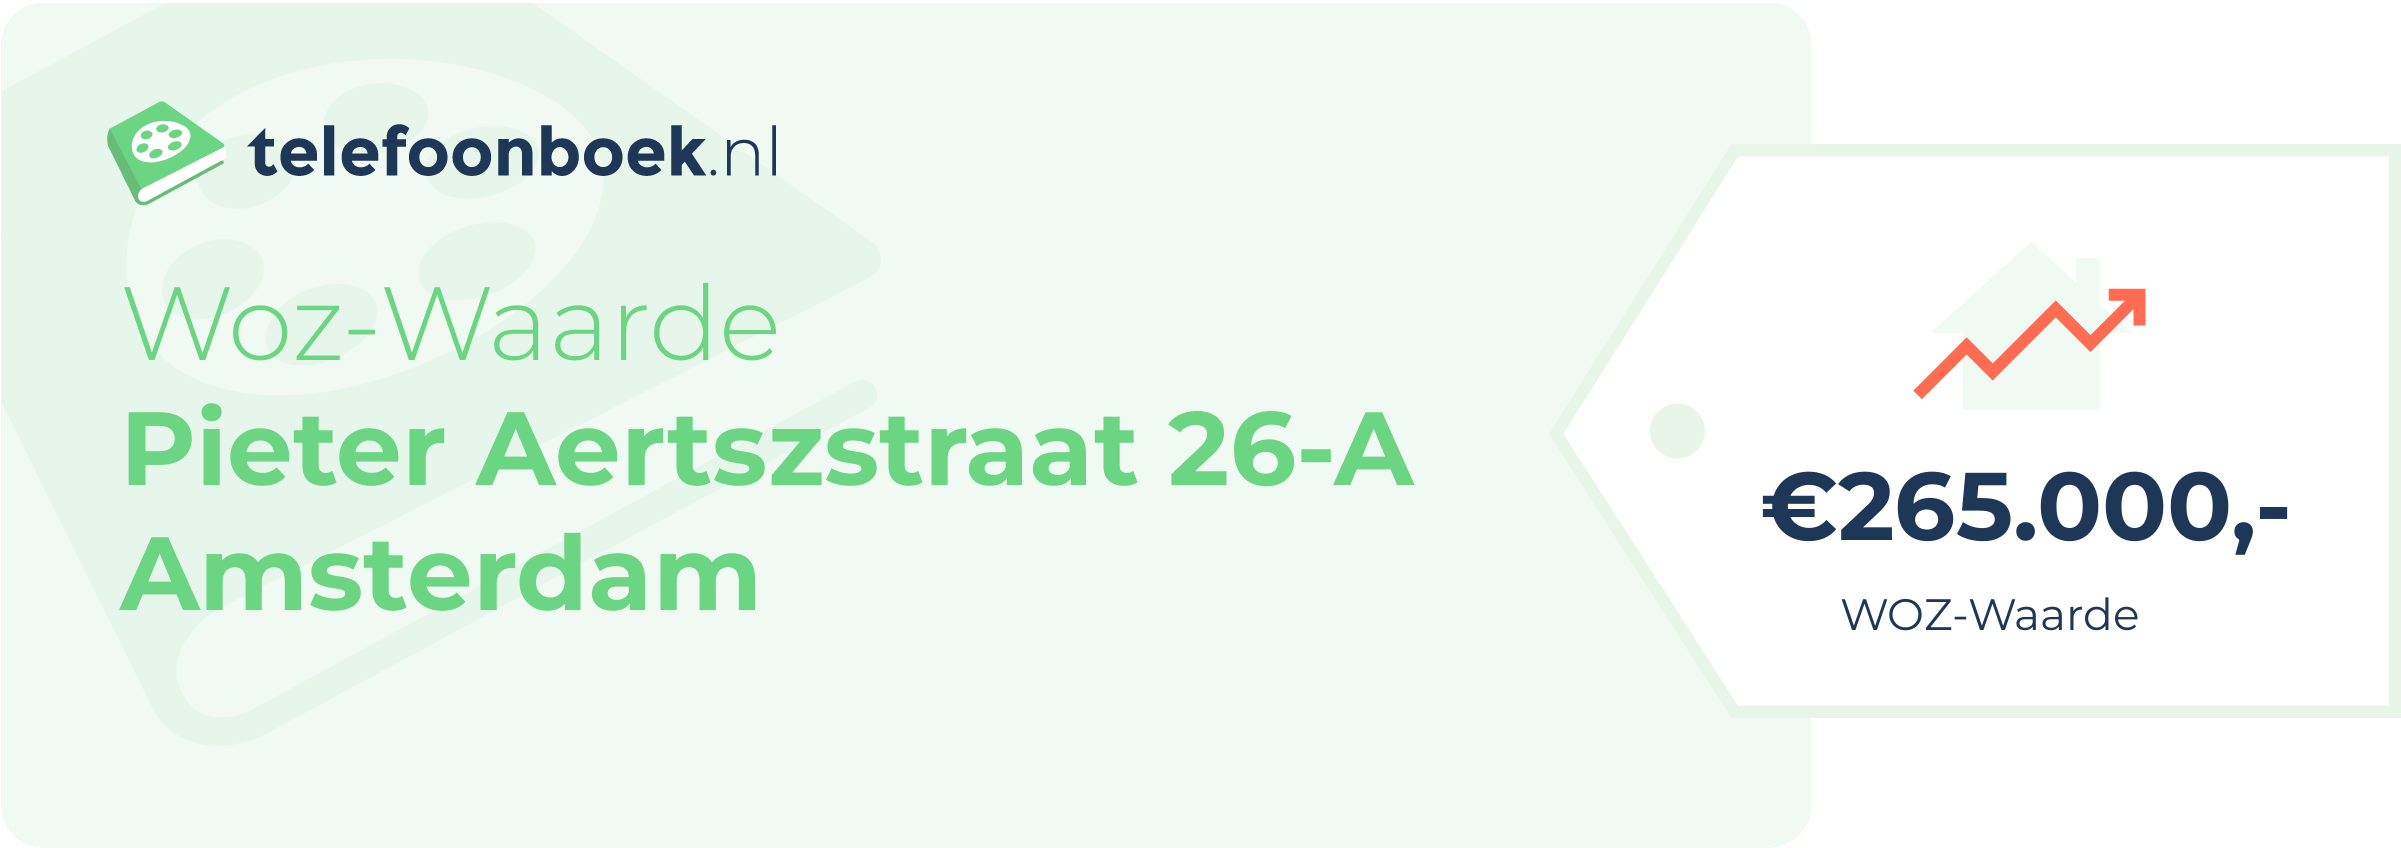 WOZ-waarde Pieter Aertszstraat 26-A Amsterdam